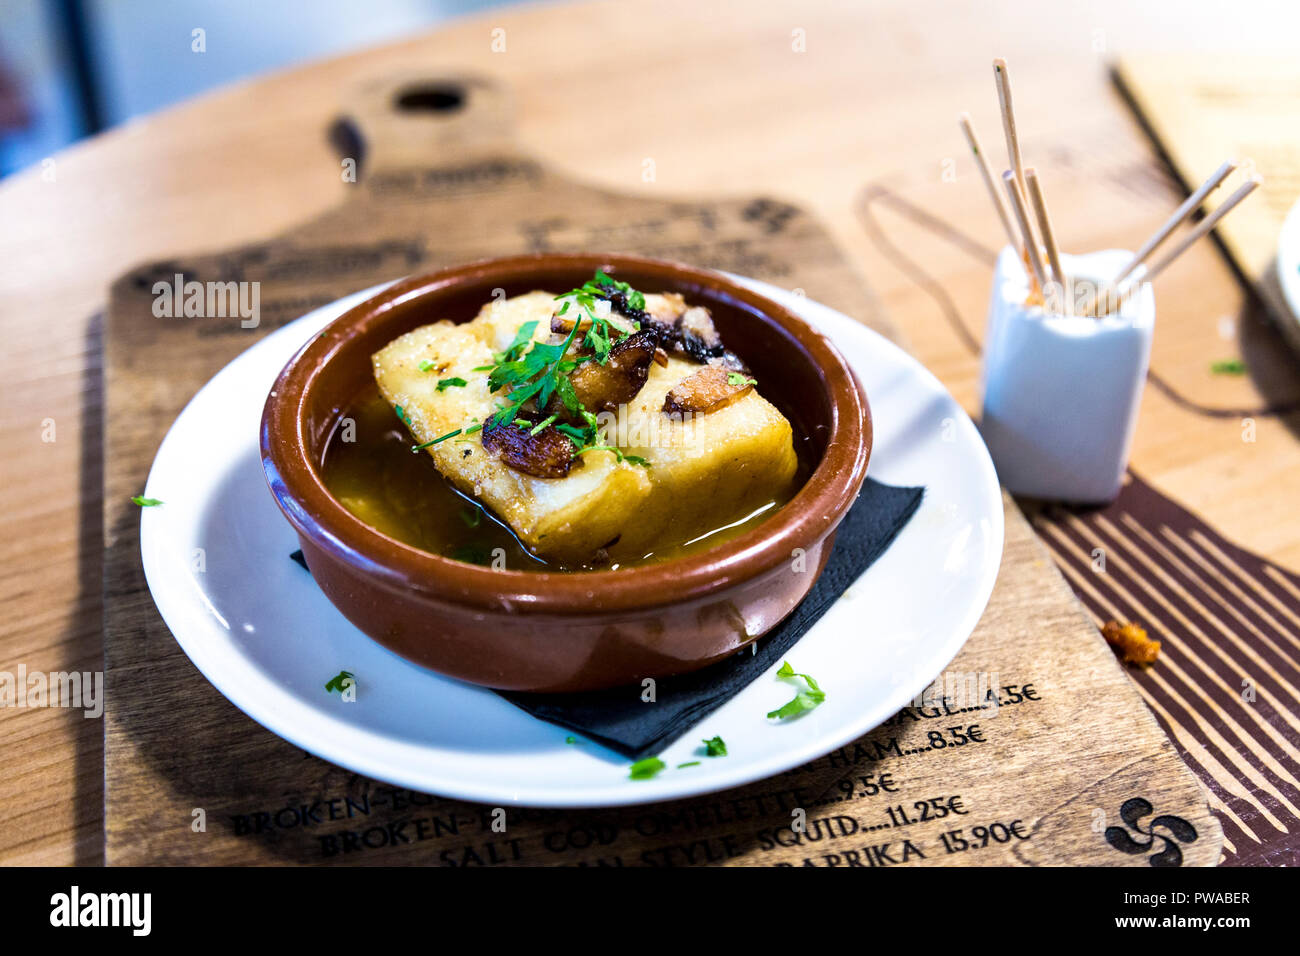 Seehecht mit Knoblauch - ein Pintxos-Gericht im baskischen Stil in El Pintxo de la Barcelona, Barcelona, Spanien Stockfoto